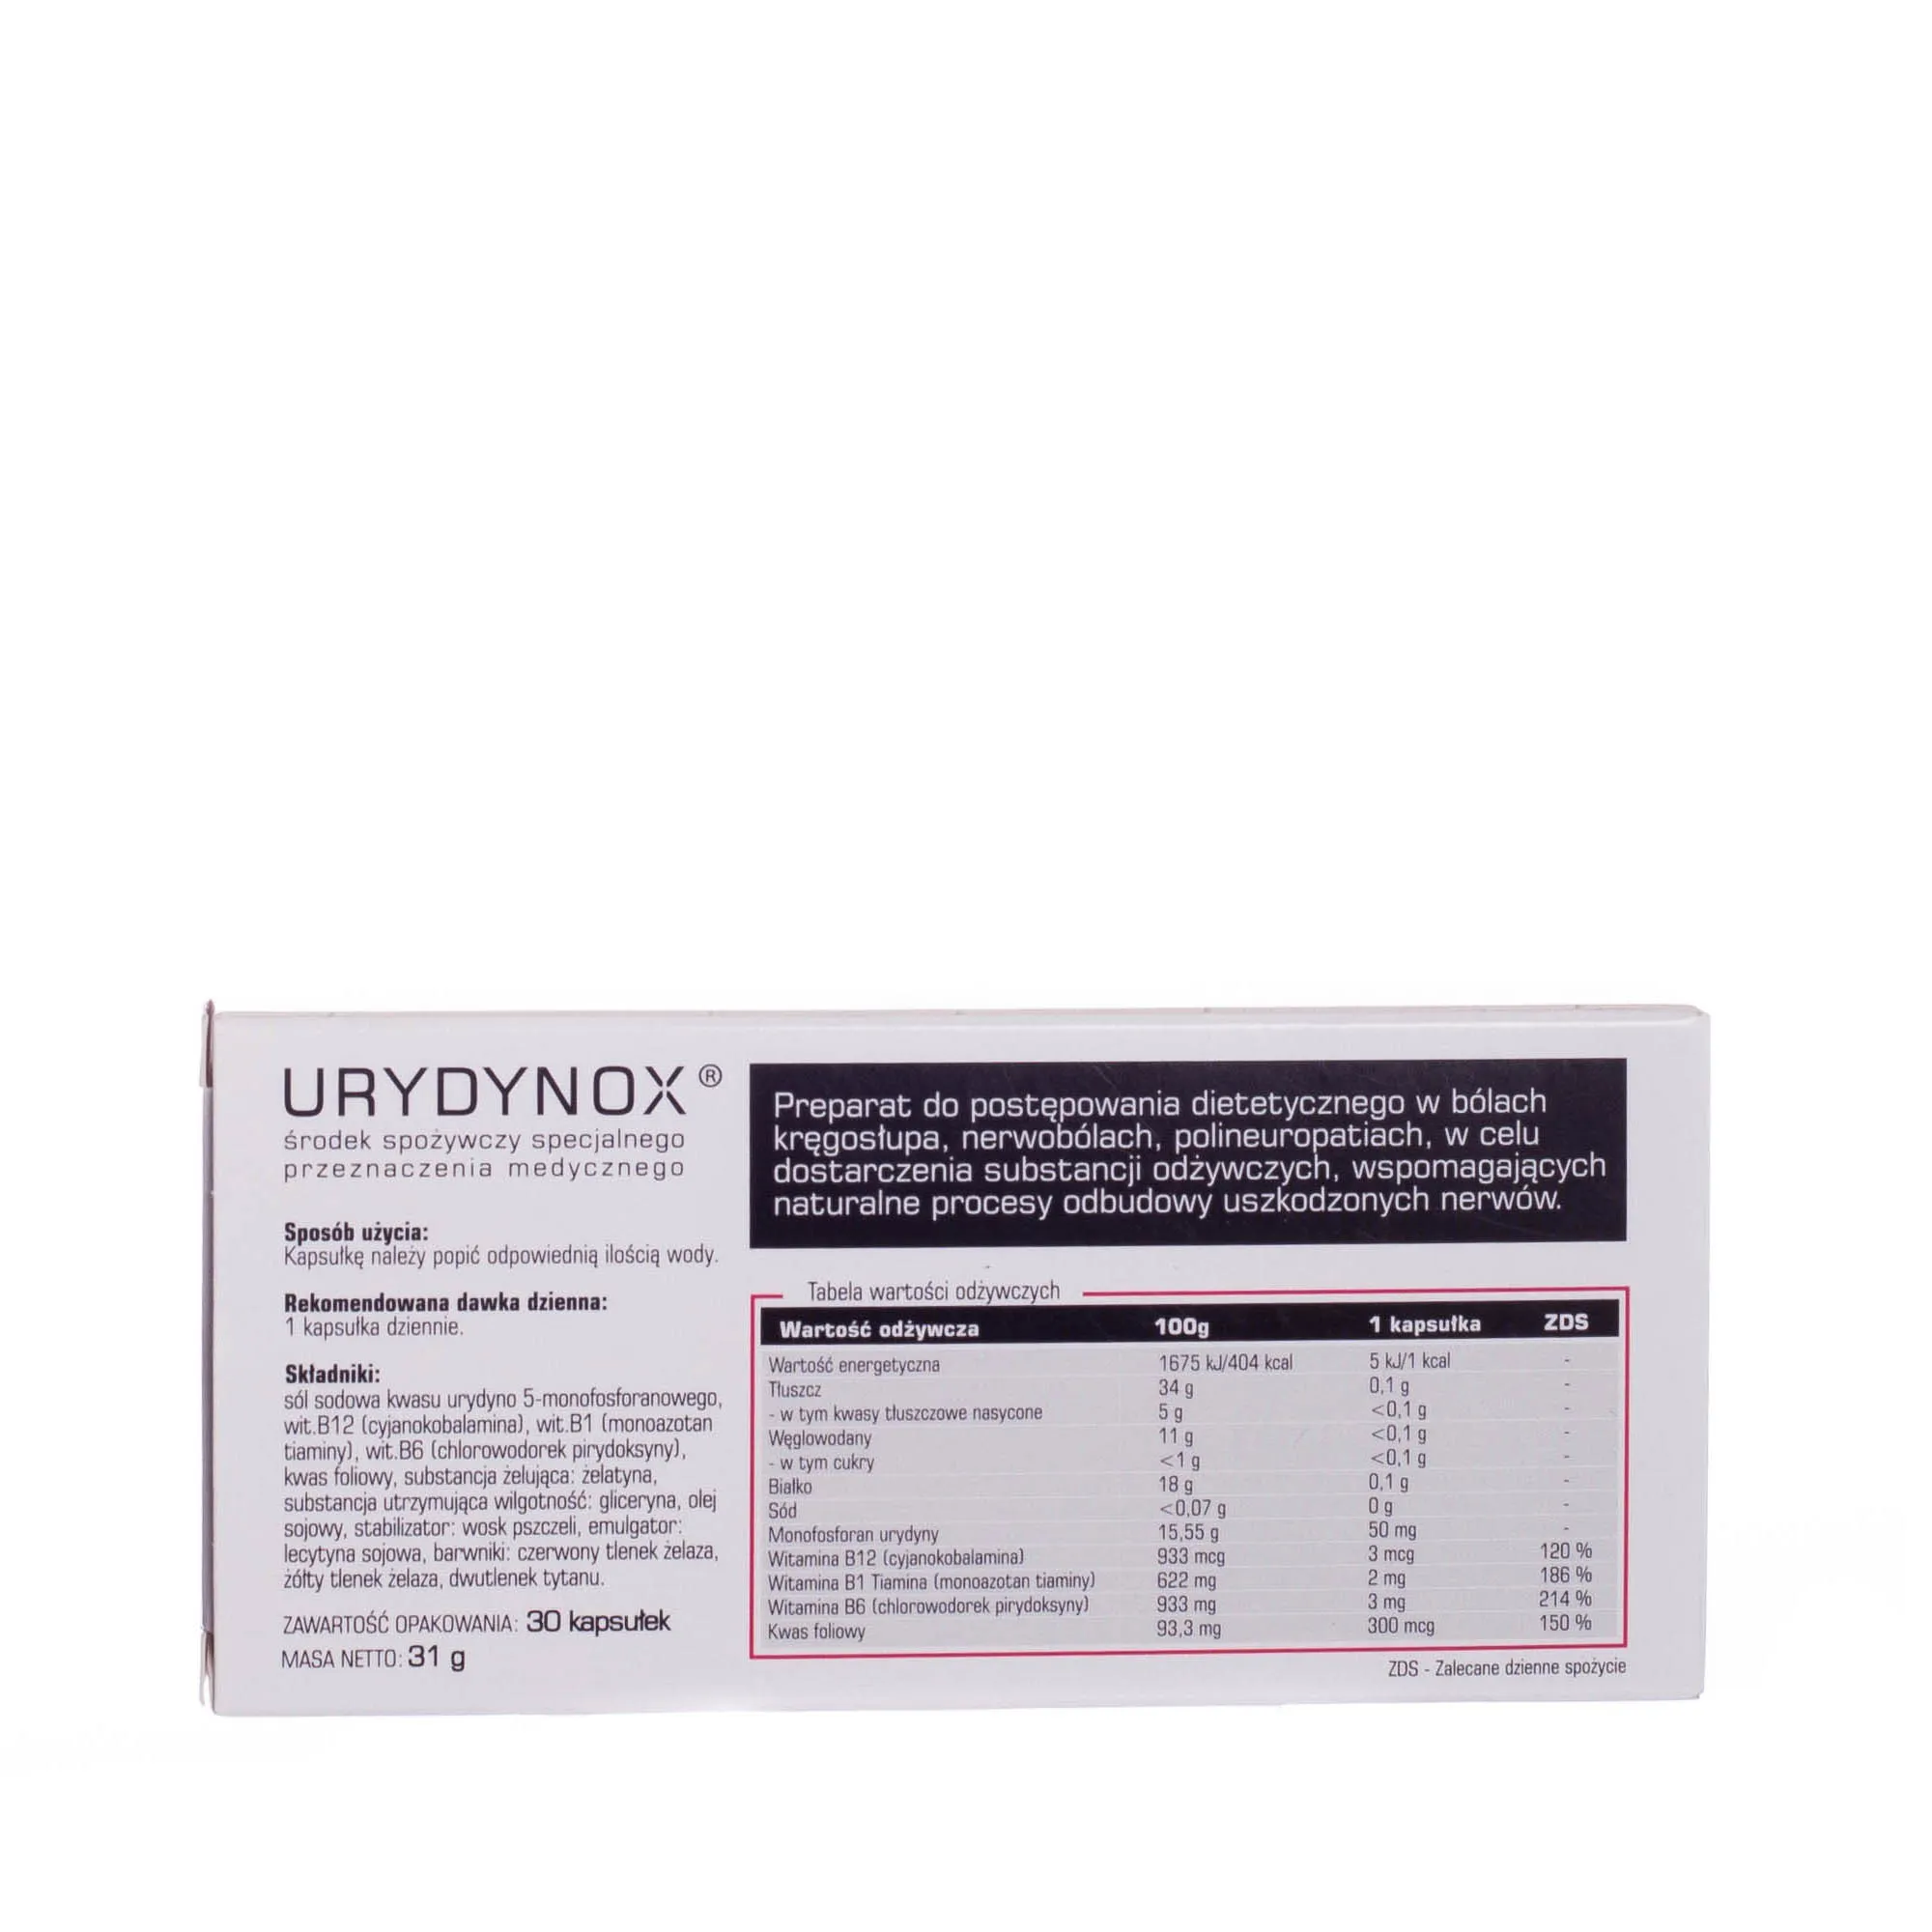 URYDYNOX - środek spożywczy specjalnego przeznaczenia medycznego, 30 kapsułek 